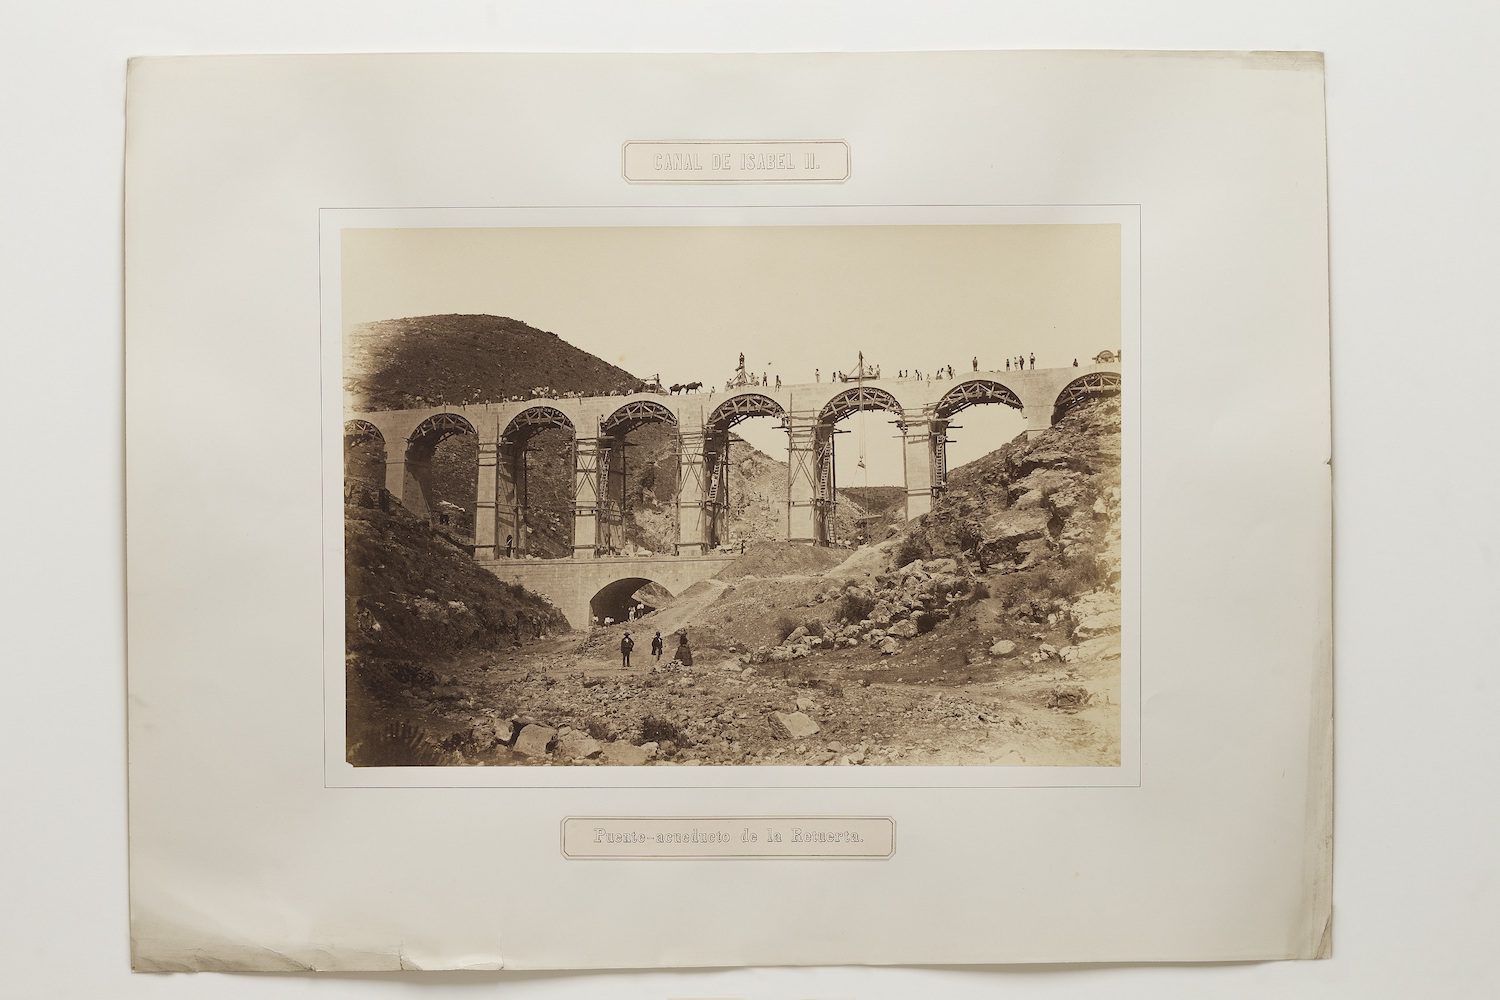 Charles Clifford | Puente acueducto de la Retuerta. 1858. Real Academia de Bellas Artes de San Fernando (Madrid). Biblioteca